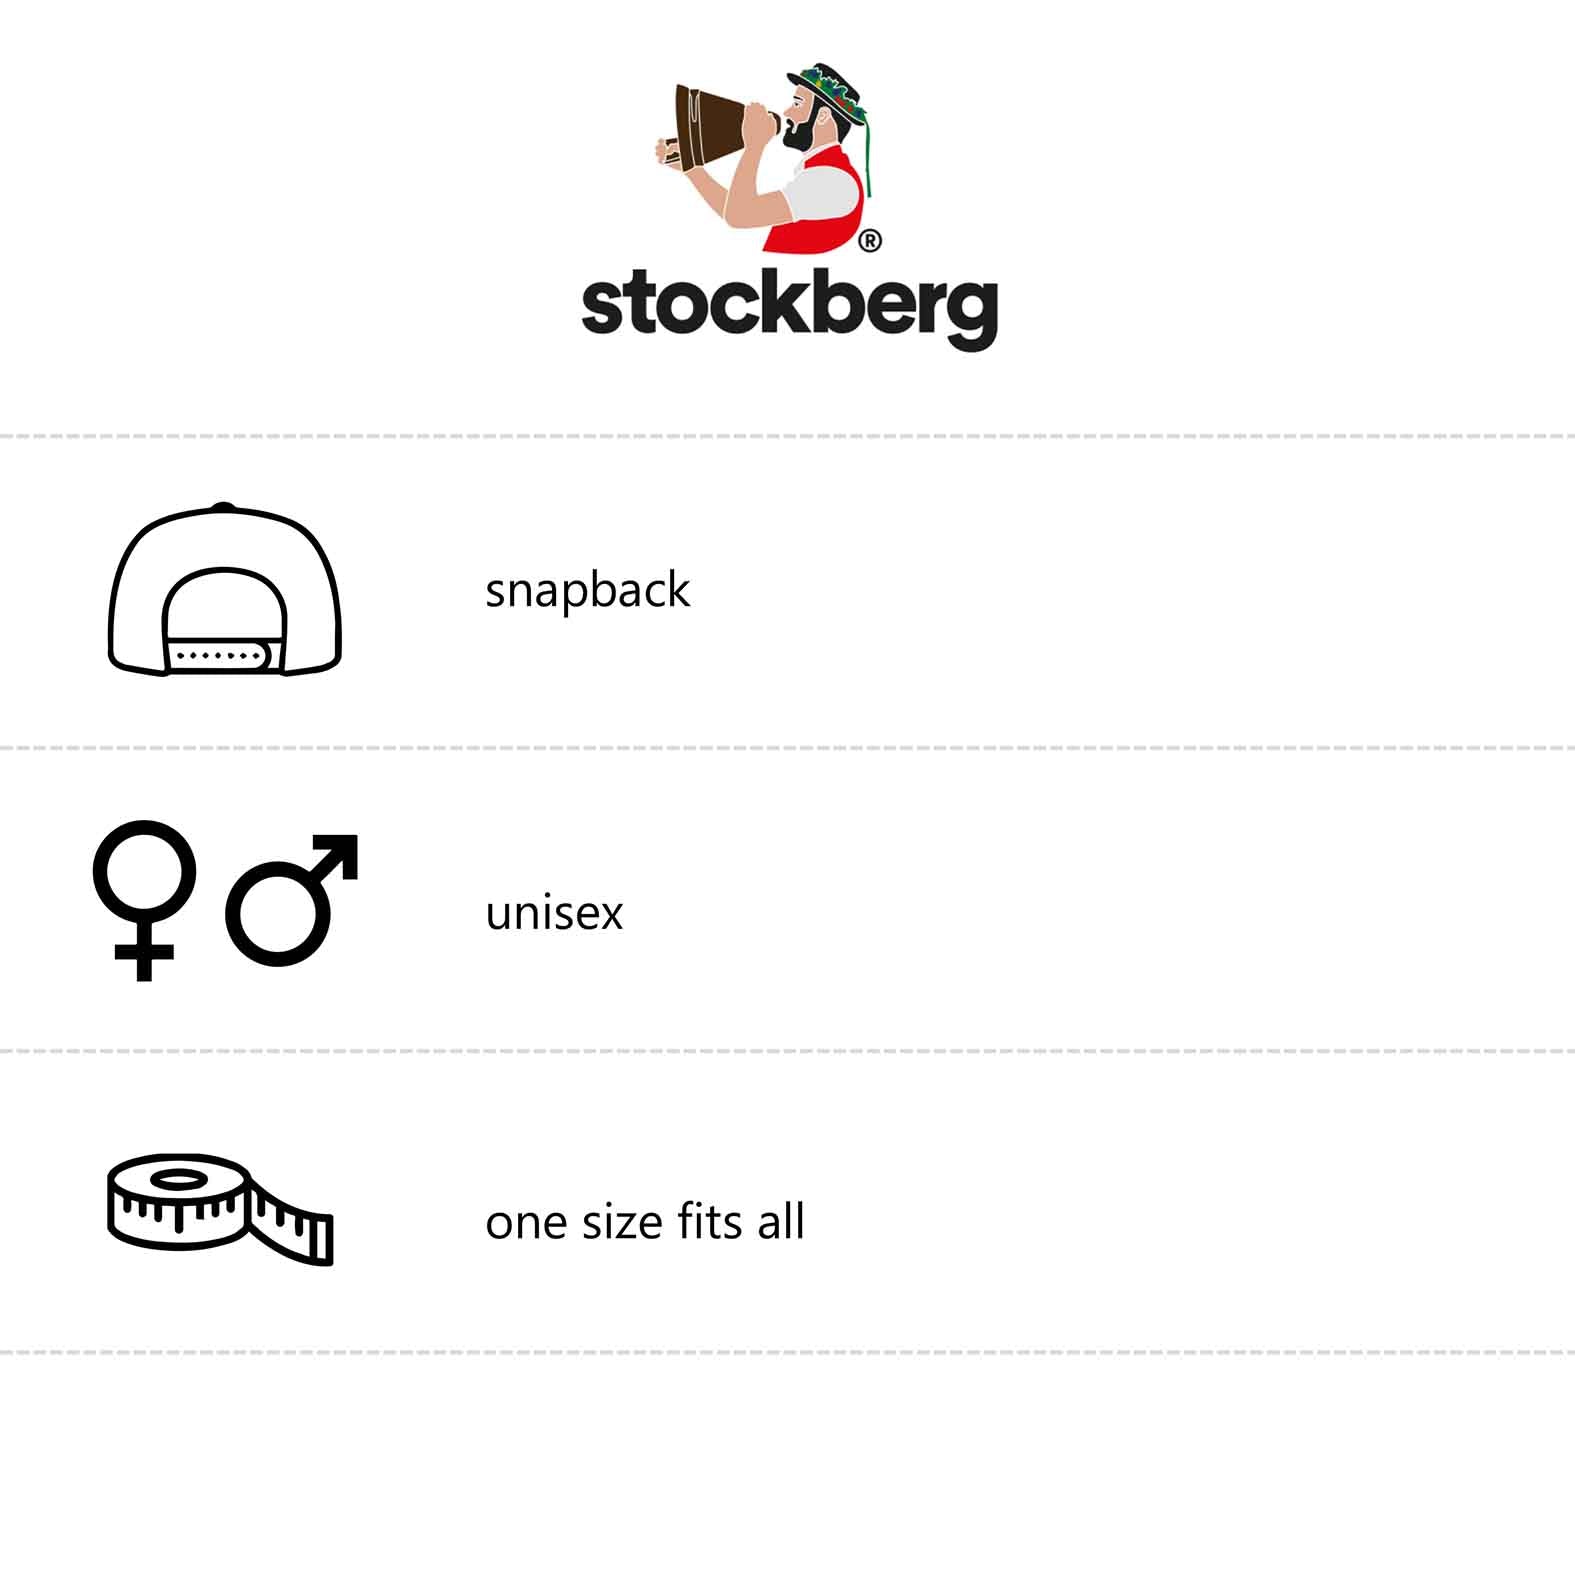 stockberg-snapback-cap